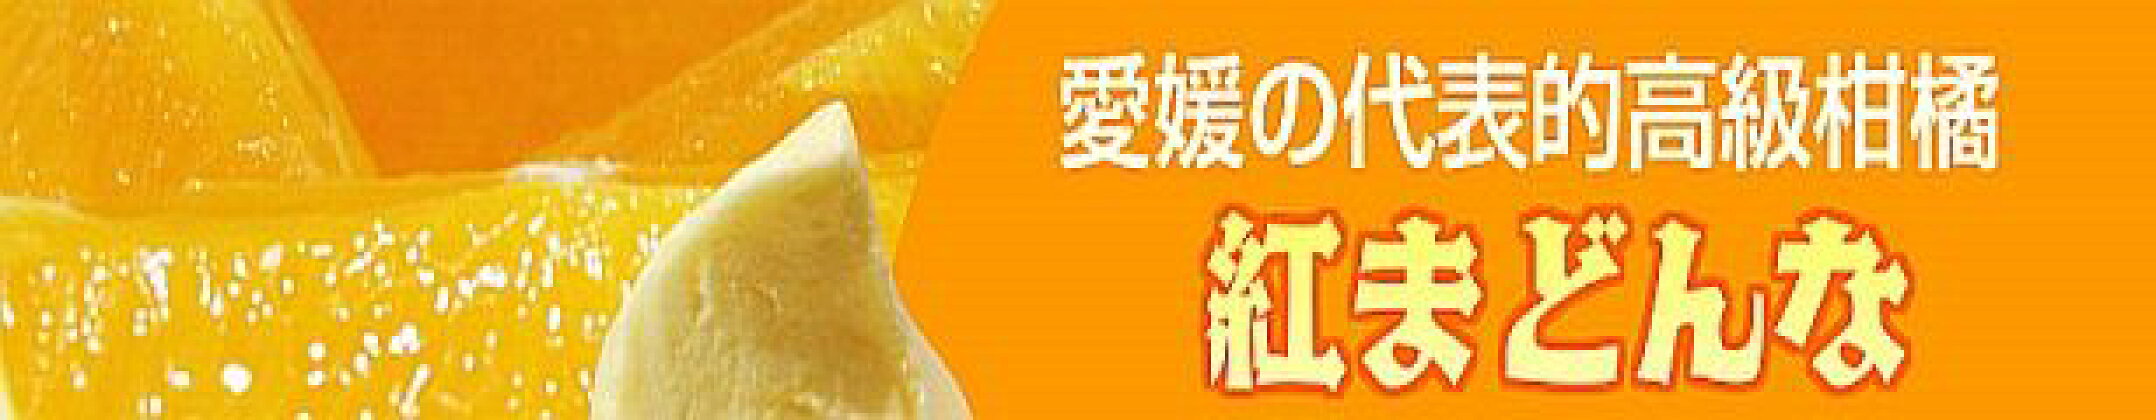 高級柑橘ひめマドンナジェラート6個セット